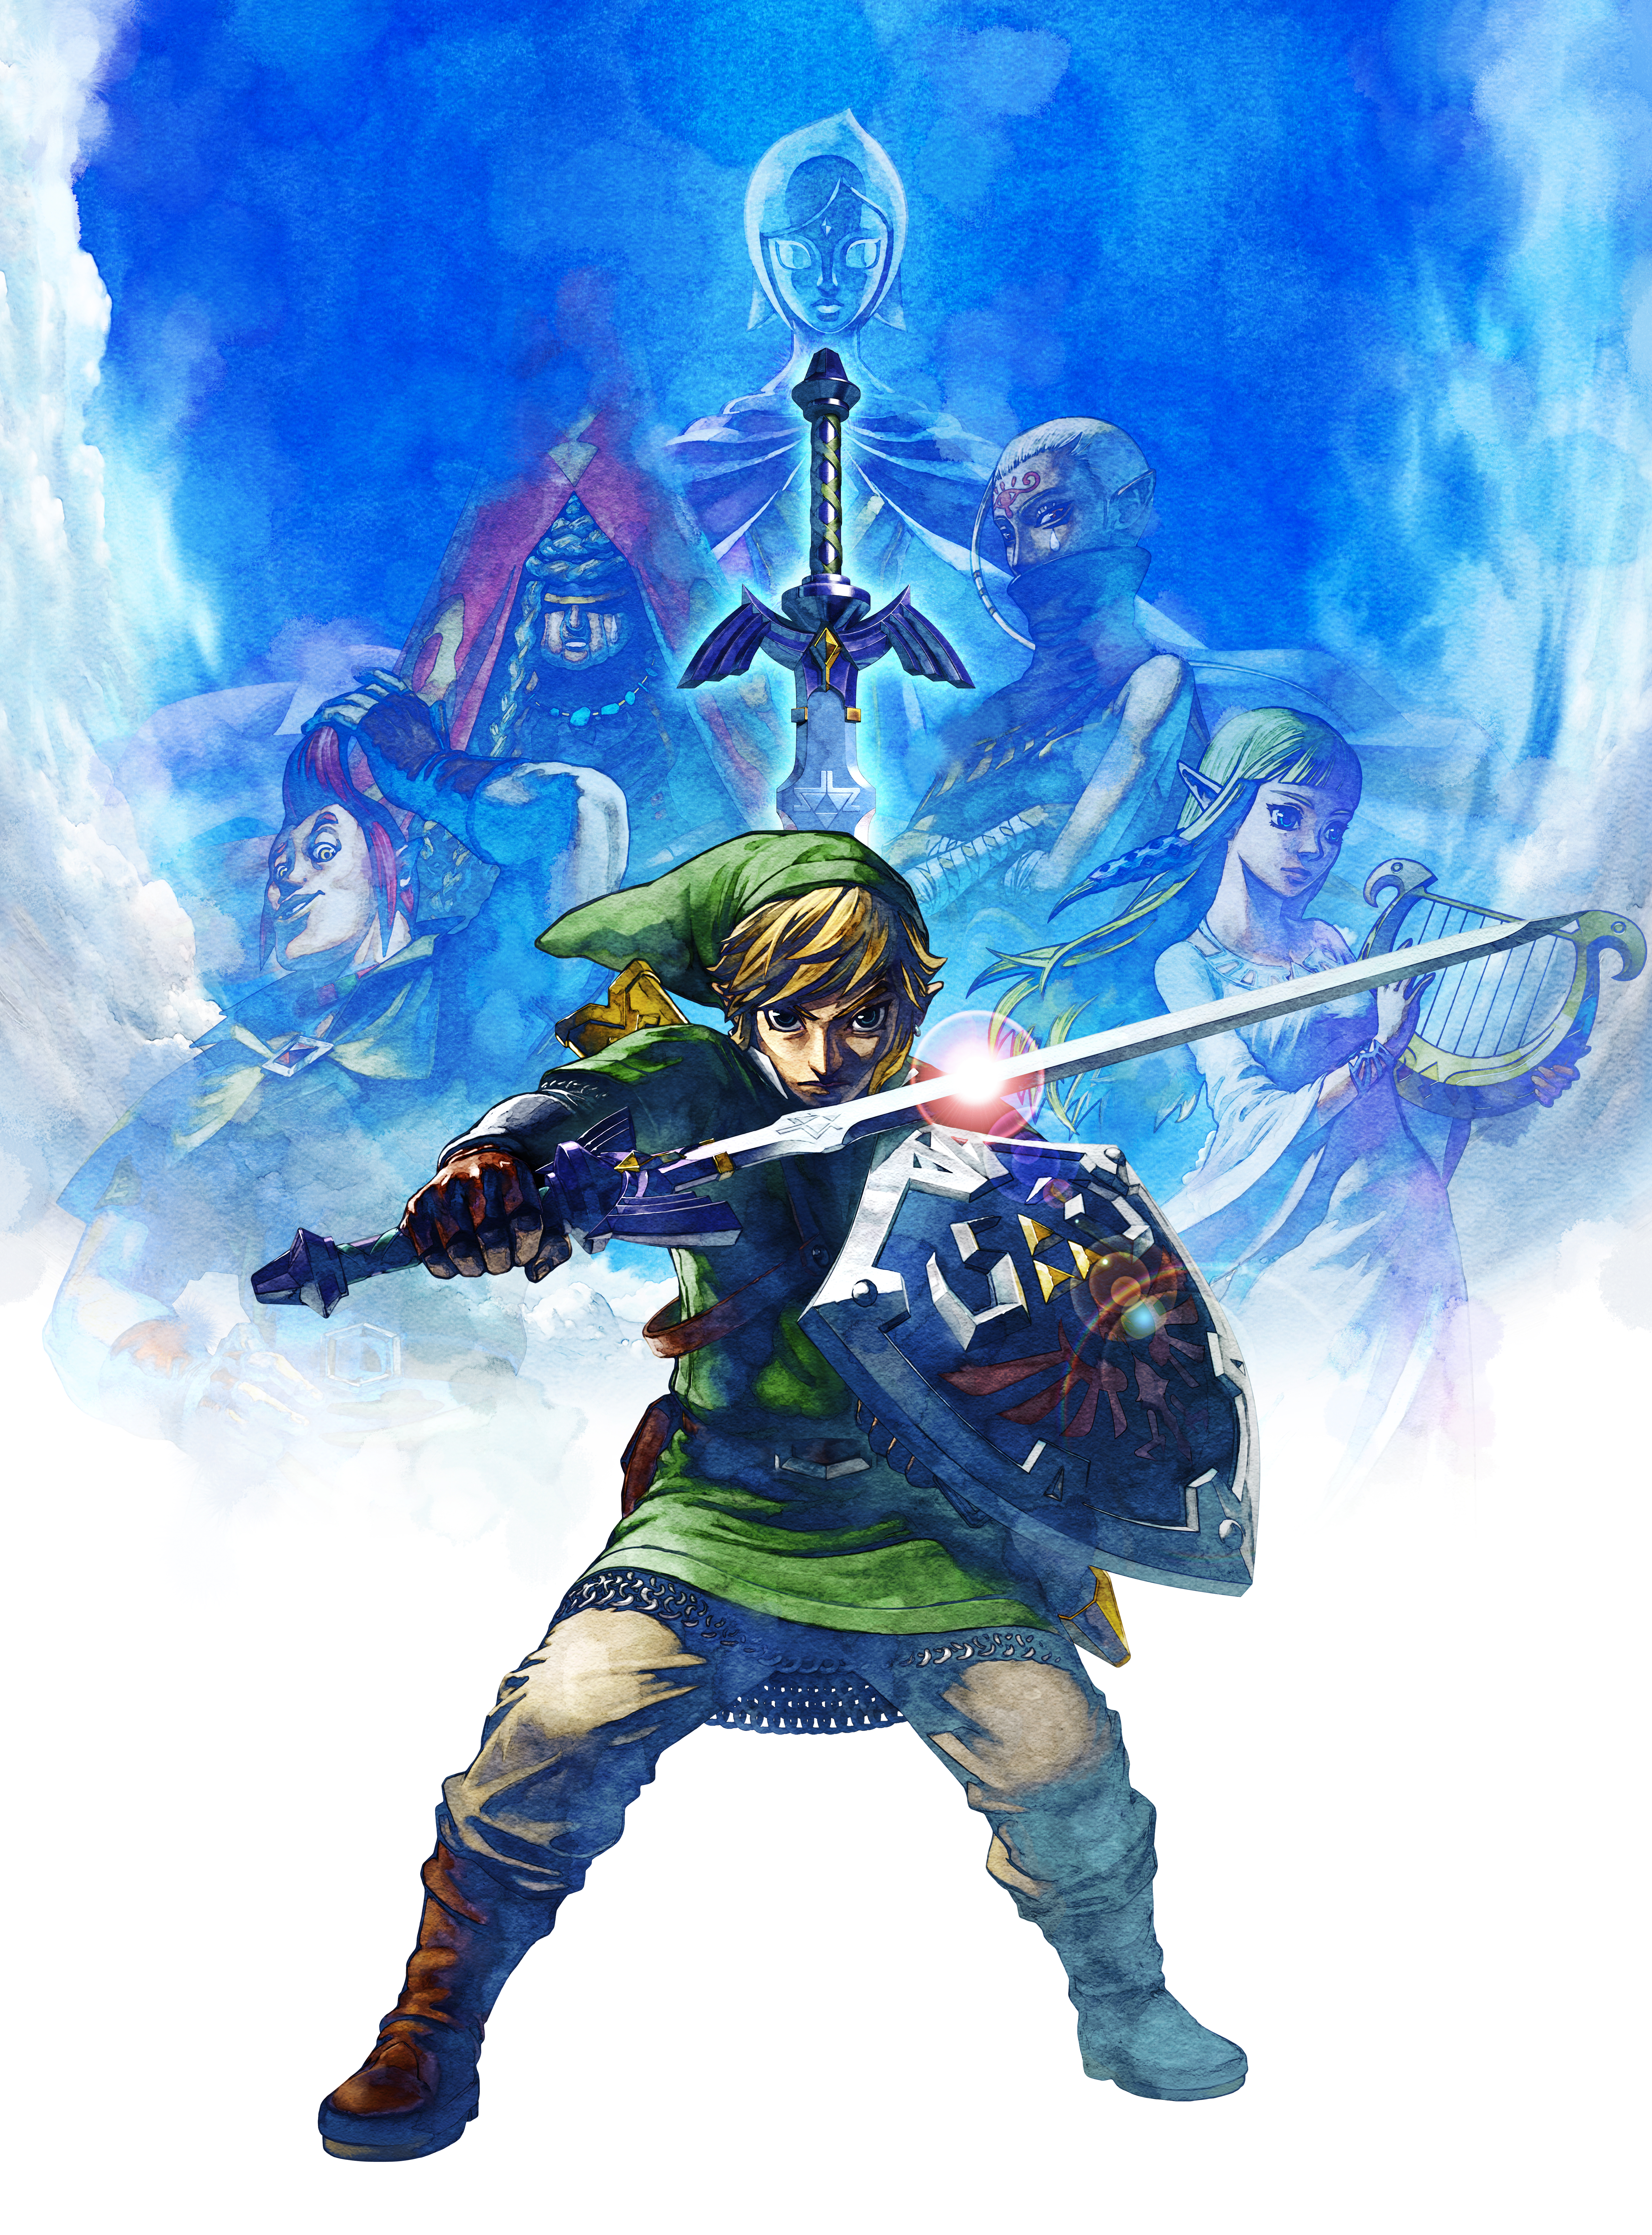 The Legend Of Zelda: Skyward Sword Art